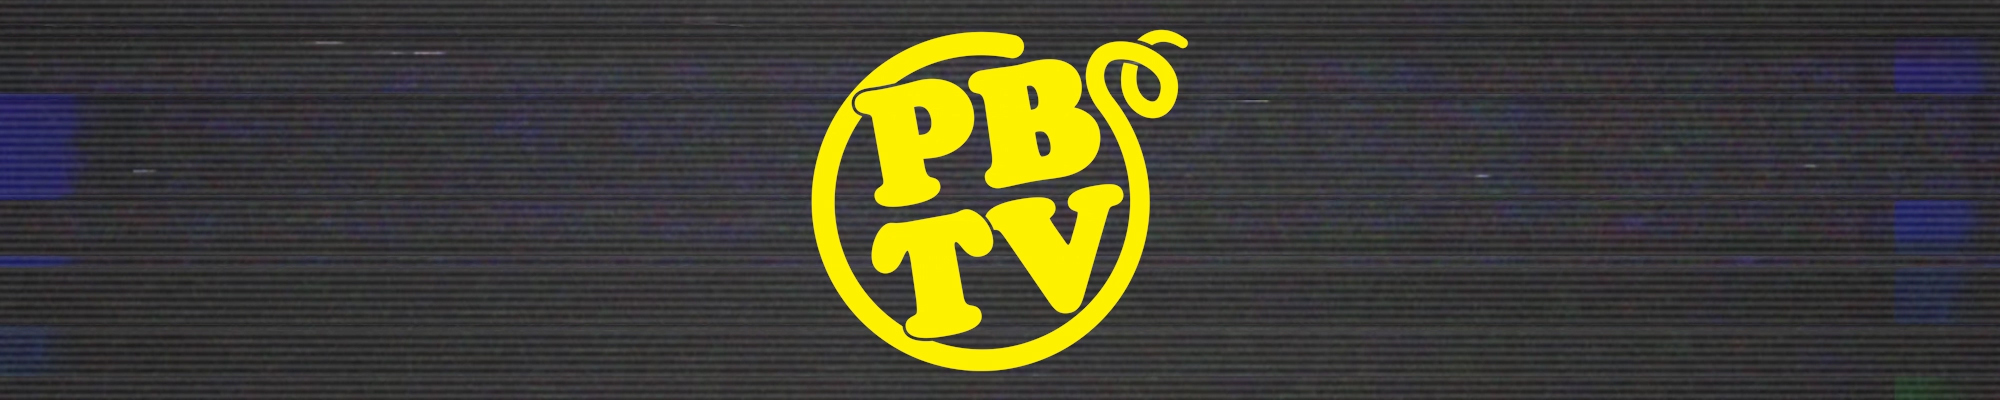 PBTV